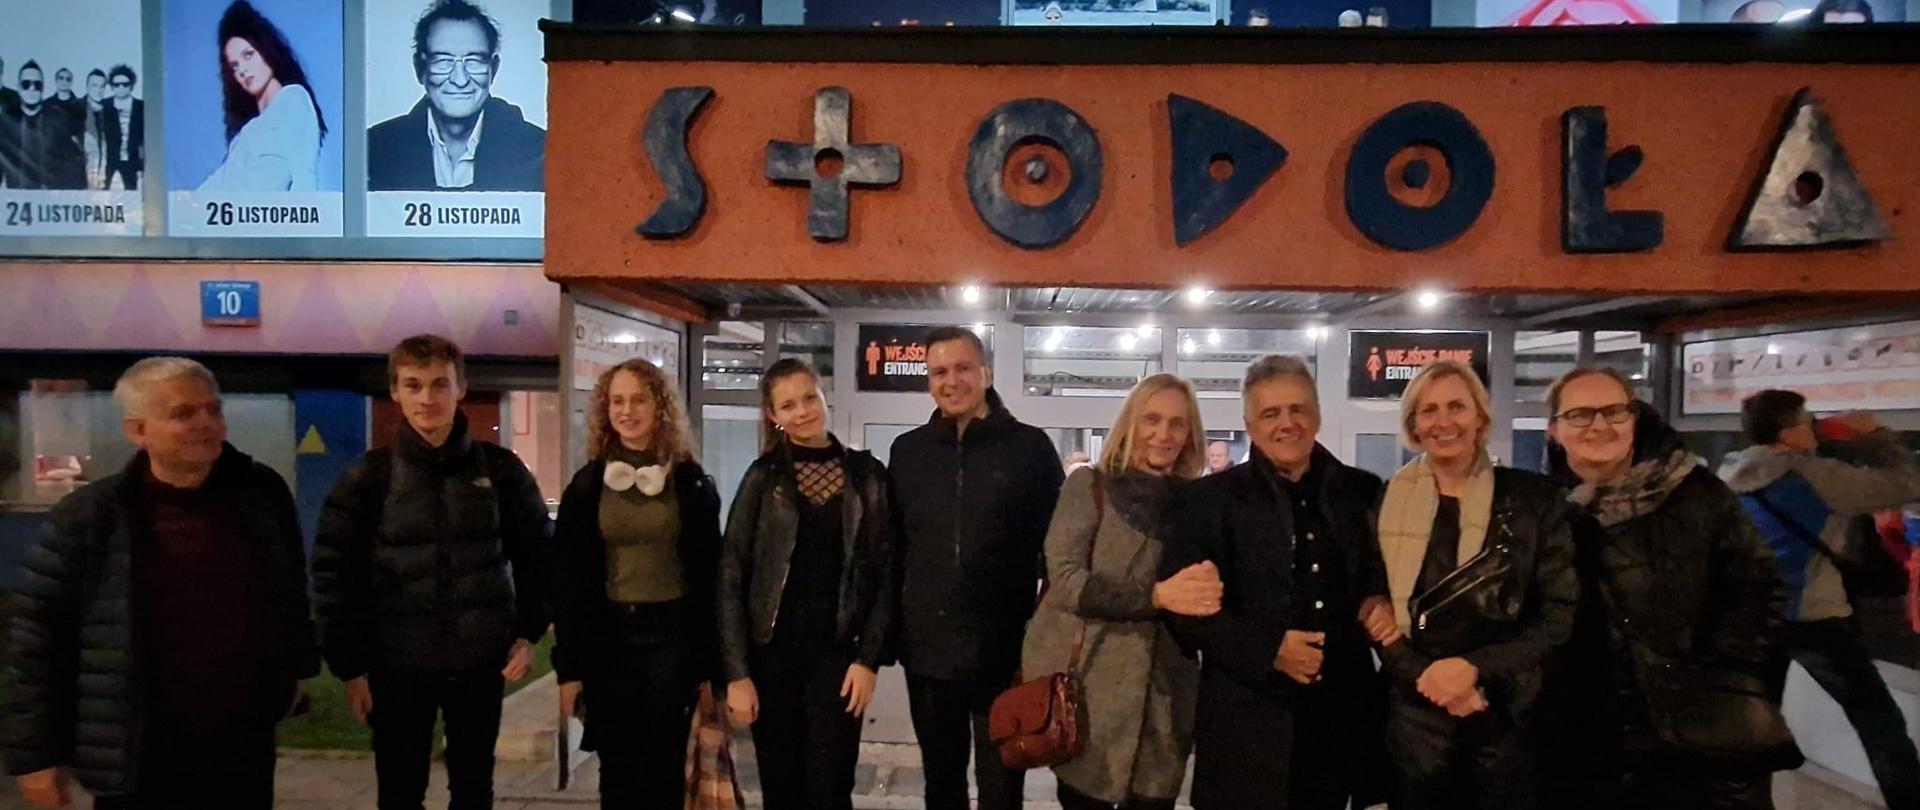 Uczestnicy wycieczki stoją przed klubem Stodoła w Warszawie